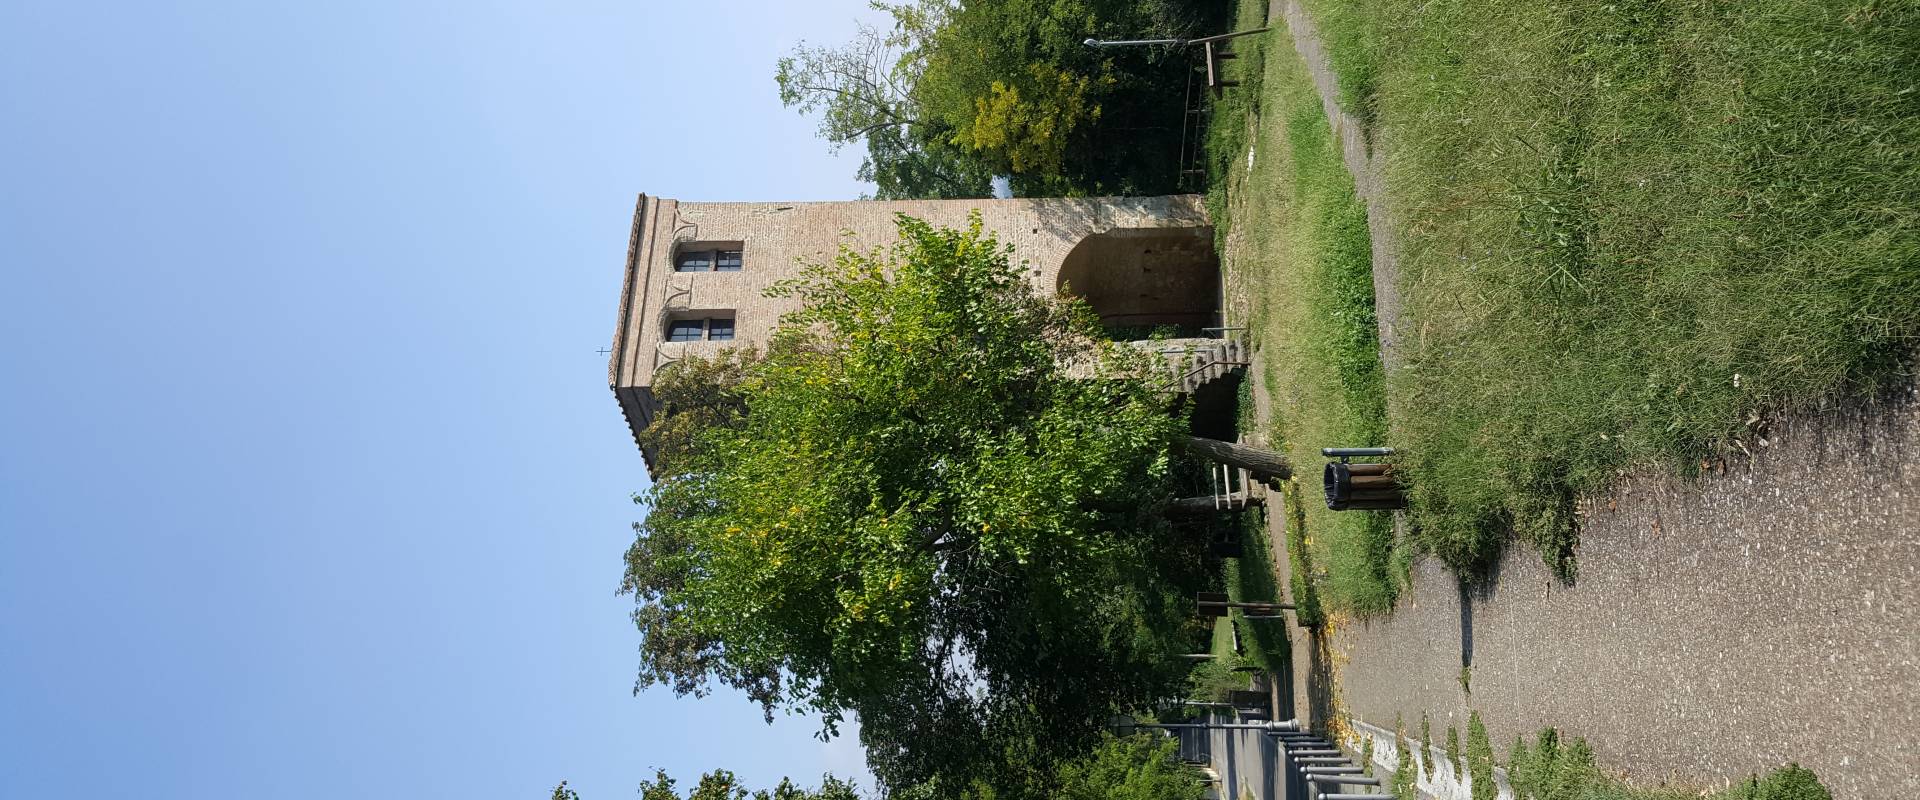 Torre di San Pietro di Ozzano foto di Andr.marino